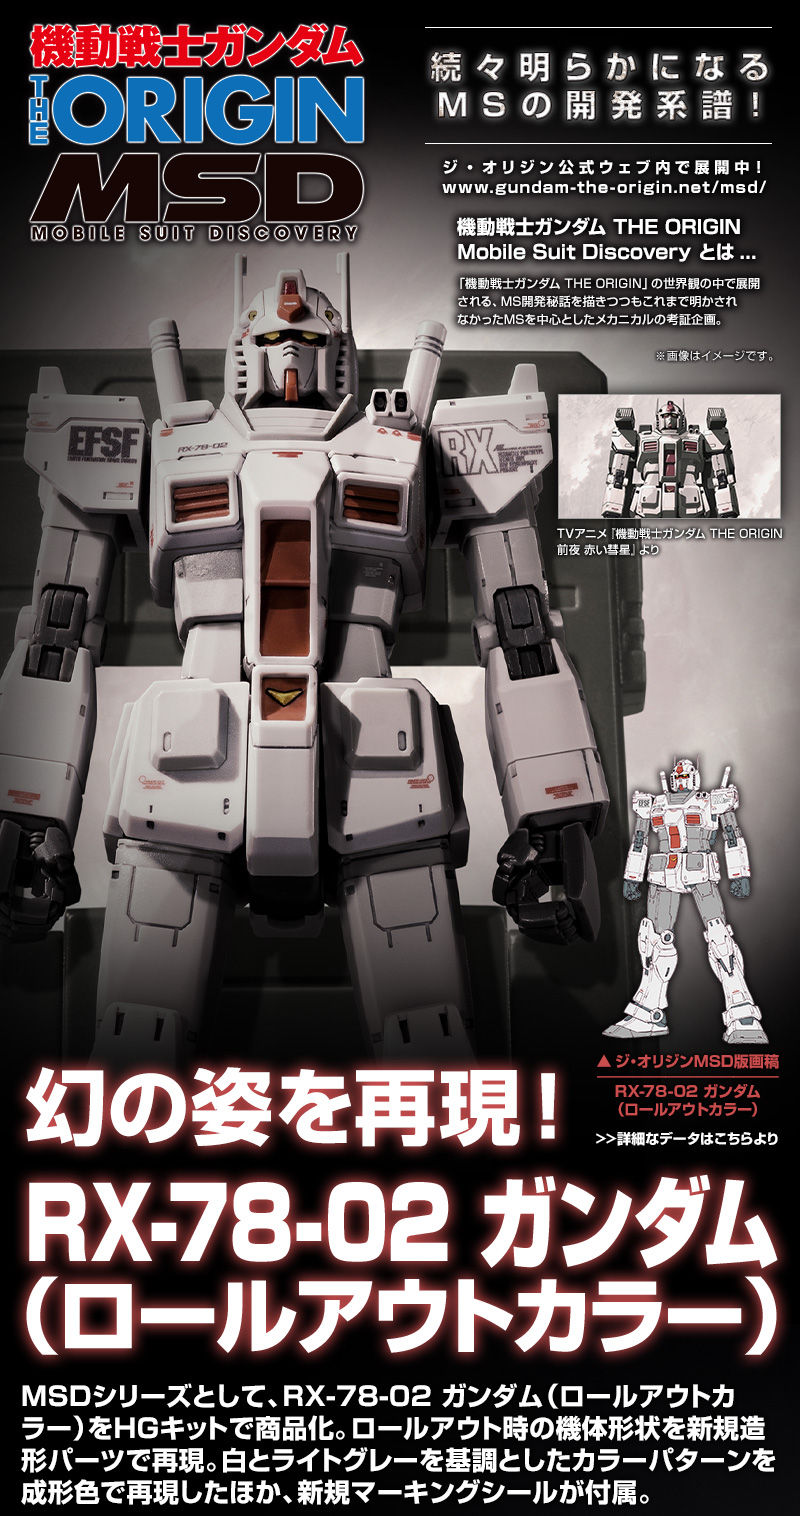 ガンプラ Hg Rx 78 02 ガンダム ロールアウトカラー Gundam The Origin版 Hg 1 144 ガンダムmk Iii 発売決定 ゲームよりどりサブカルみどりパーク